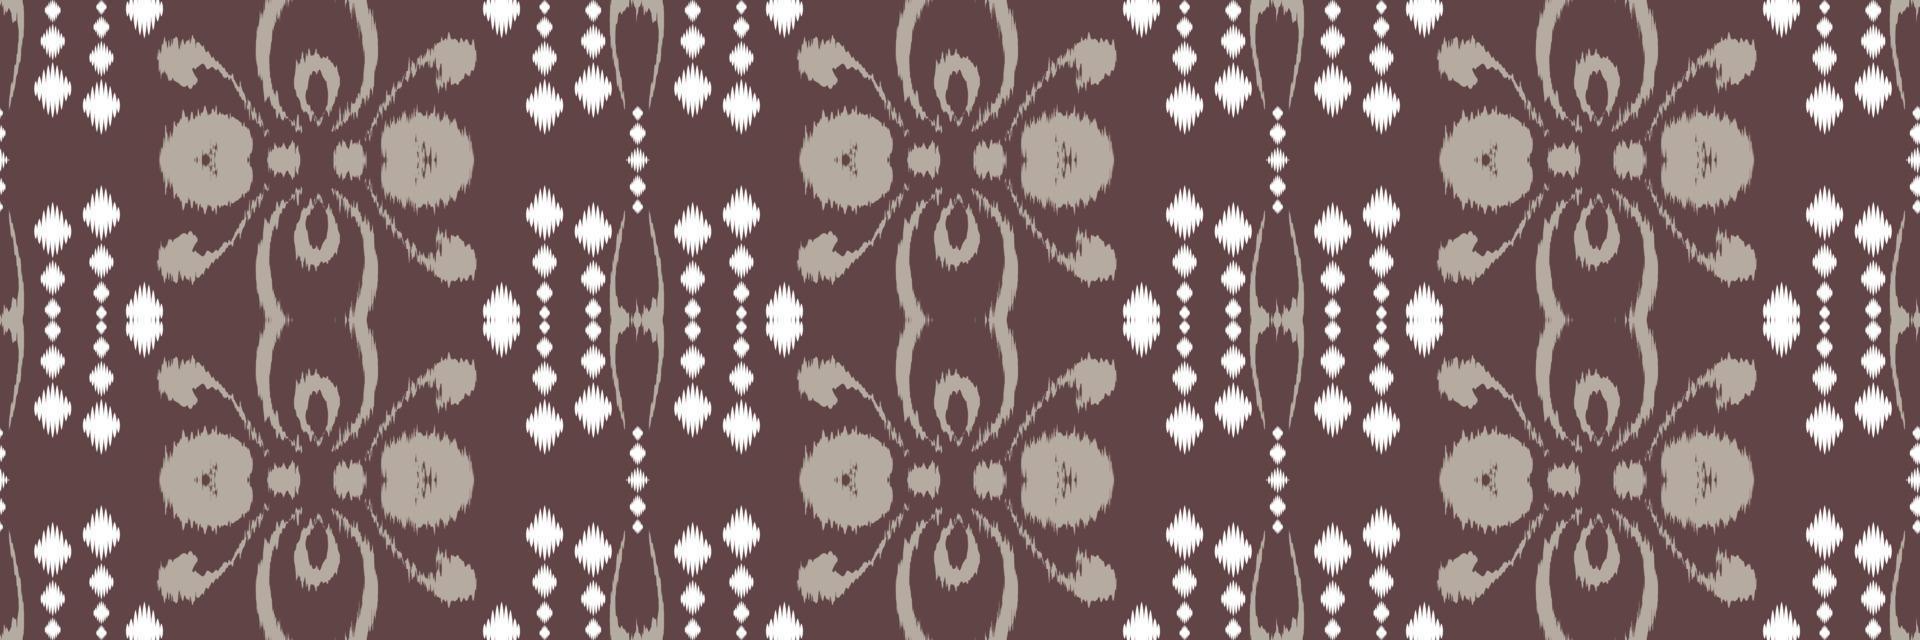 batik textil ikkat o ikat fondo de patrones sin fisuras diseño vectorial digital para imprimir saree kurti borneo borde de tela símbolos de pincel muestras ropa de fiesta vector